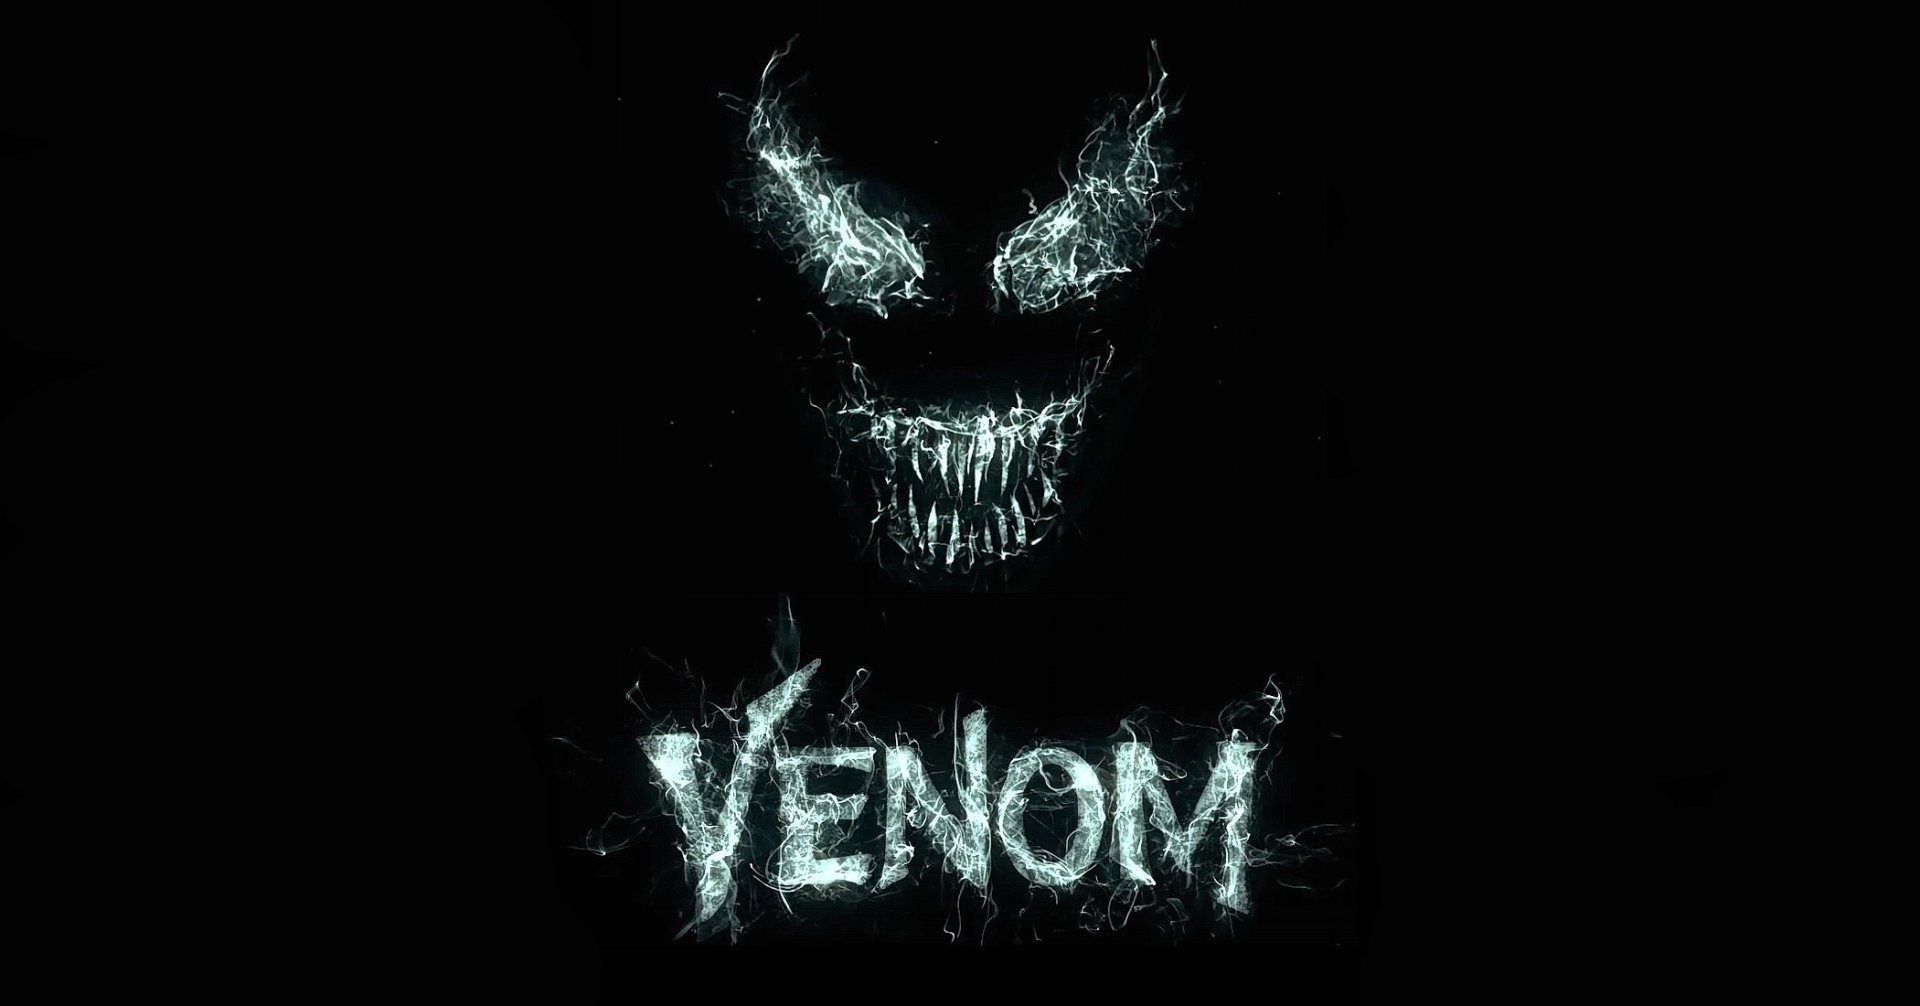 Venom download the last version for ipod